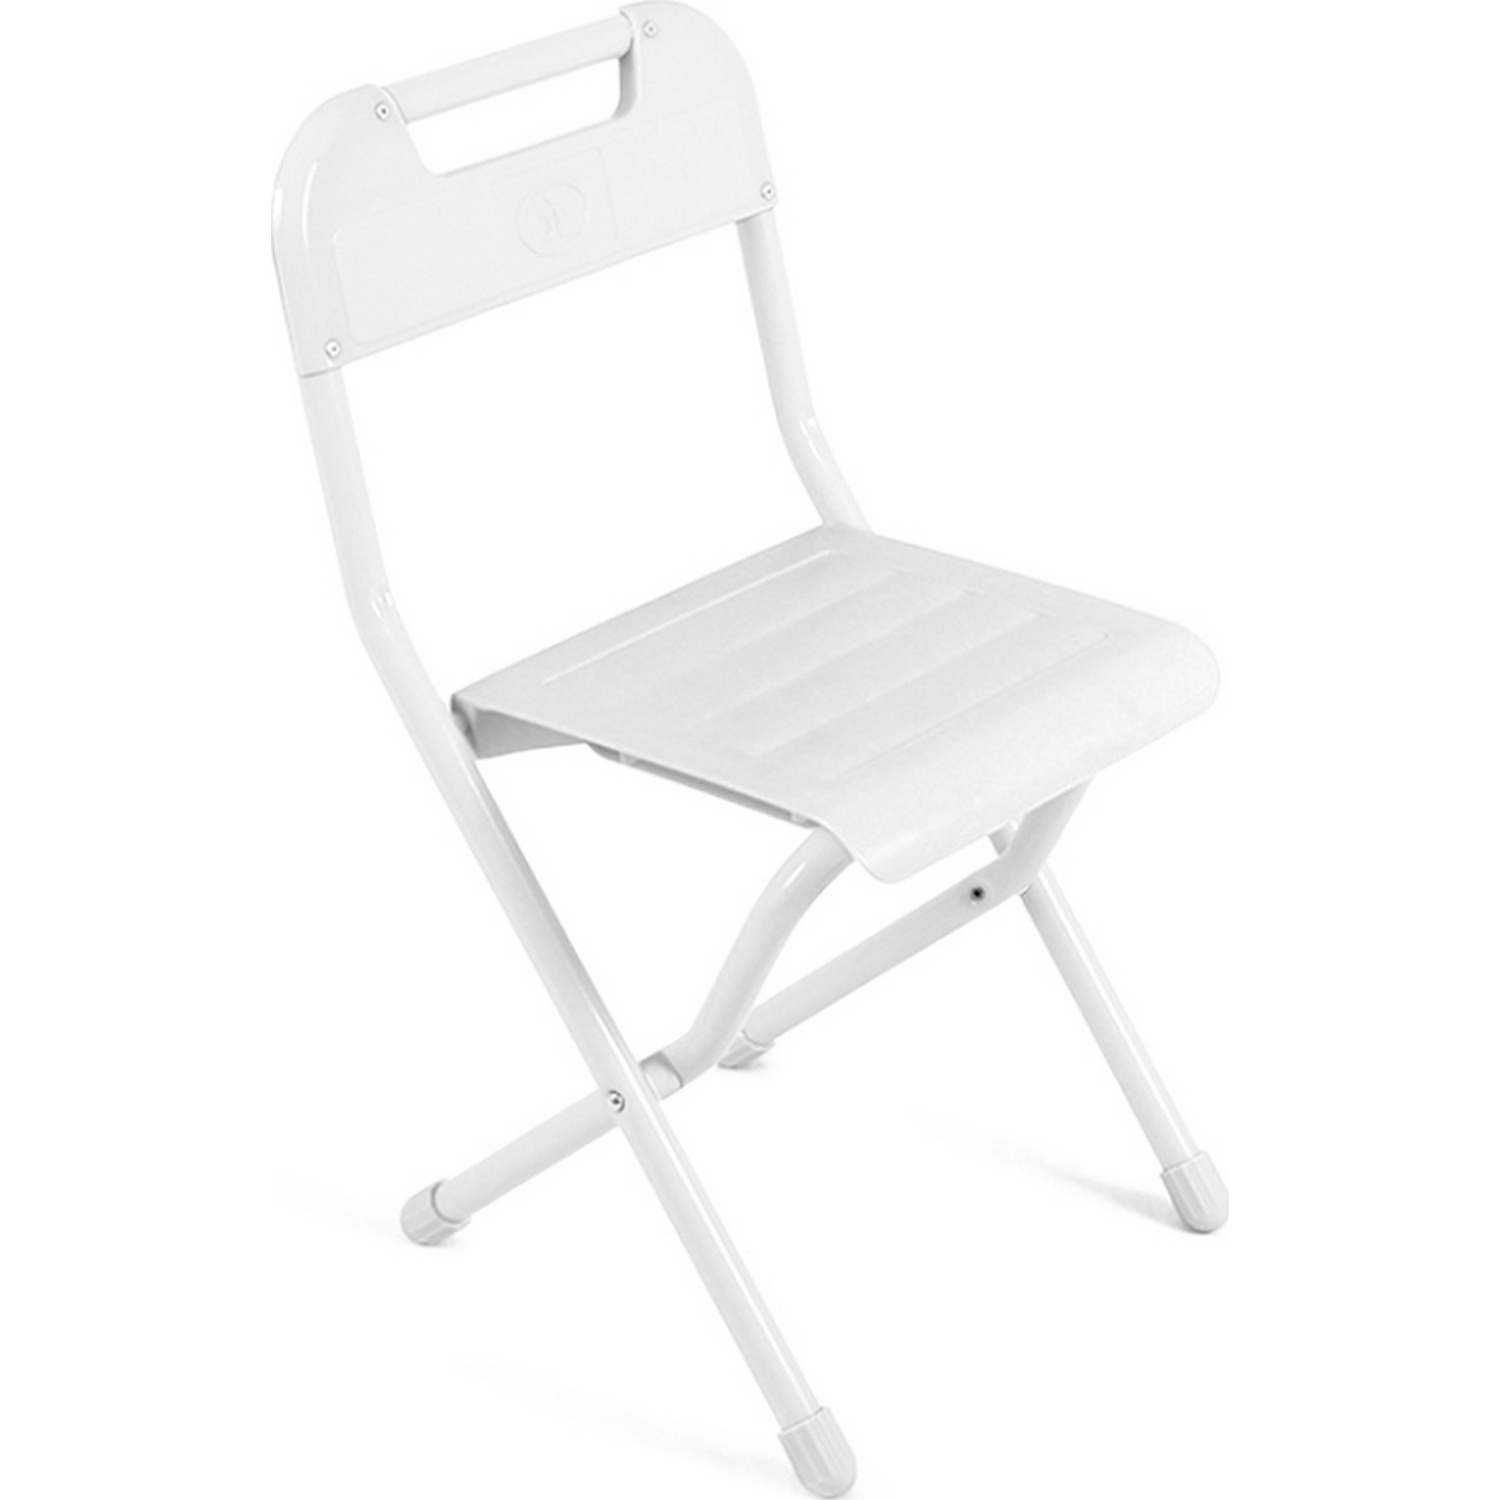 

Детский складной стульчик со спинкой Дэми ССД02 Белый/Белый, ССД02